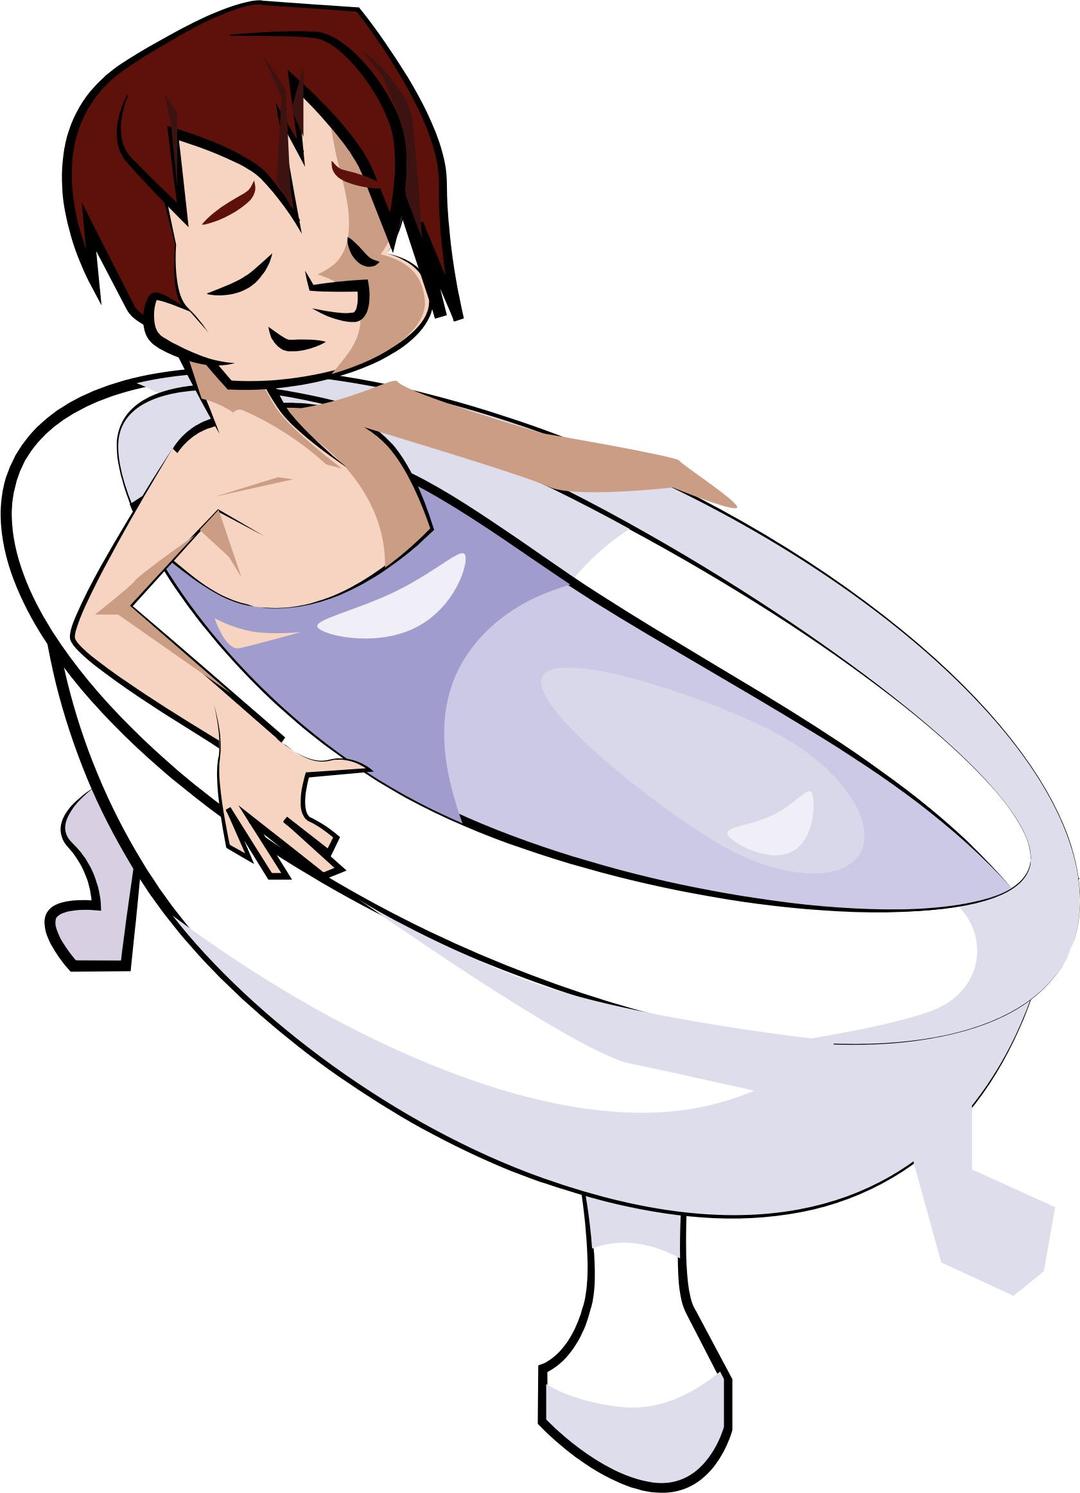 Boy in Bathtub  png transparent